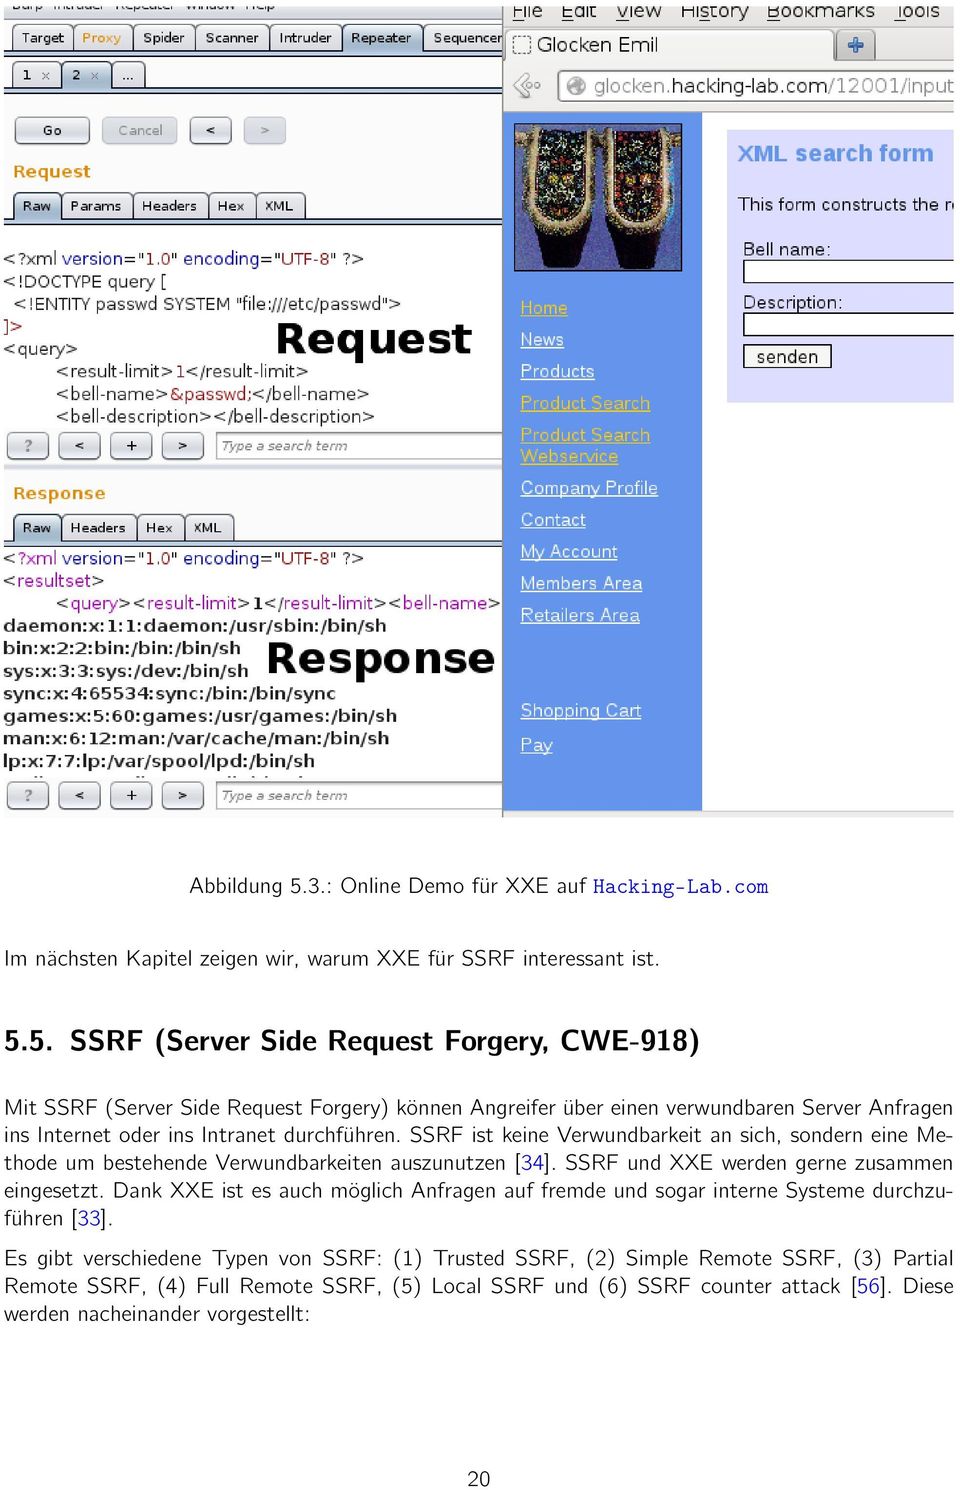 5. SSRF (Server Side Request Forgery, CWE-918) Mit SSRF (Server Side Request Forgery) können Angreifer über einen verwundbaren Server Anfragen ins Internet oder ins Intranet durchführen.